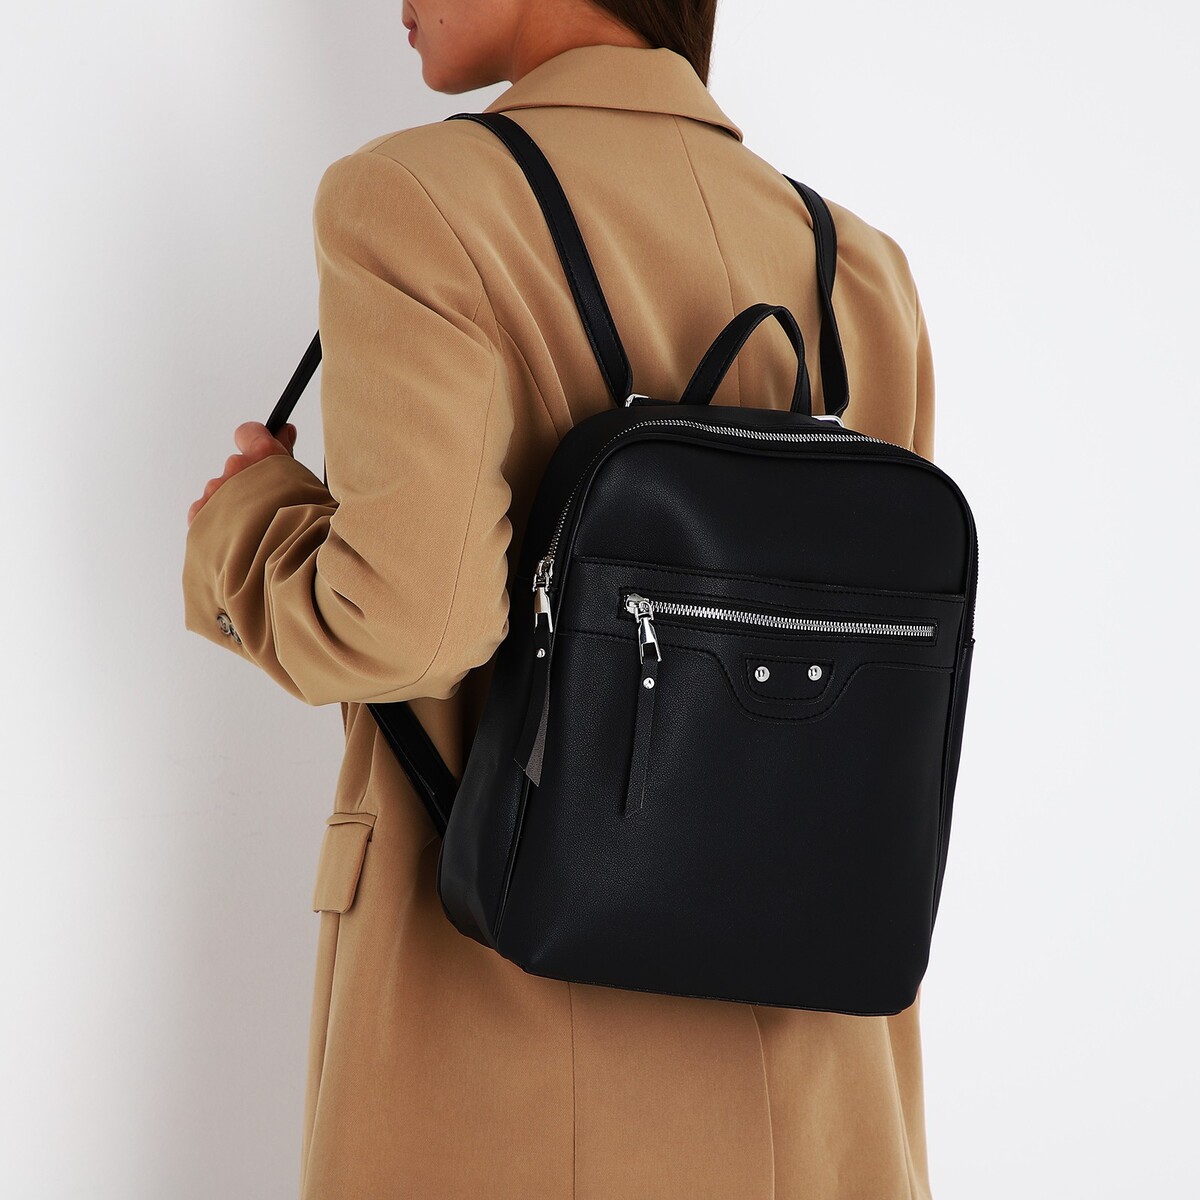 Рюкзак женский из искусственной кожи на молнии, 3 кармана, цвет черный рюкзак женский из искусственной кожи на молнии 4 кармана сумка коричневый